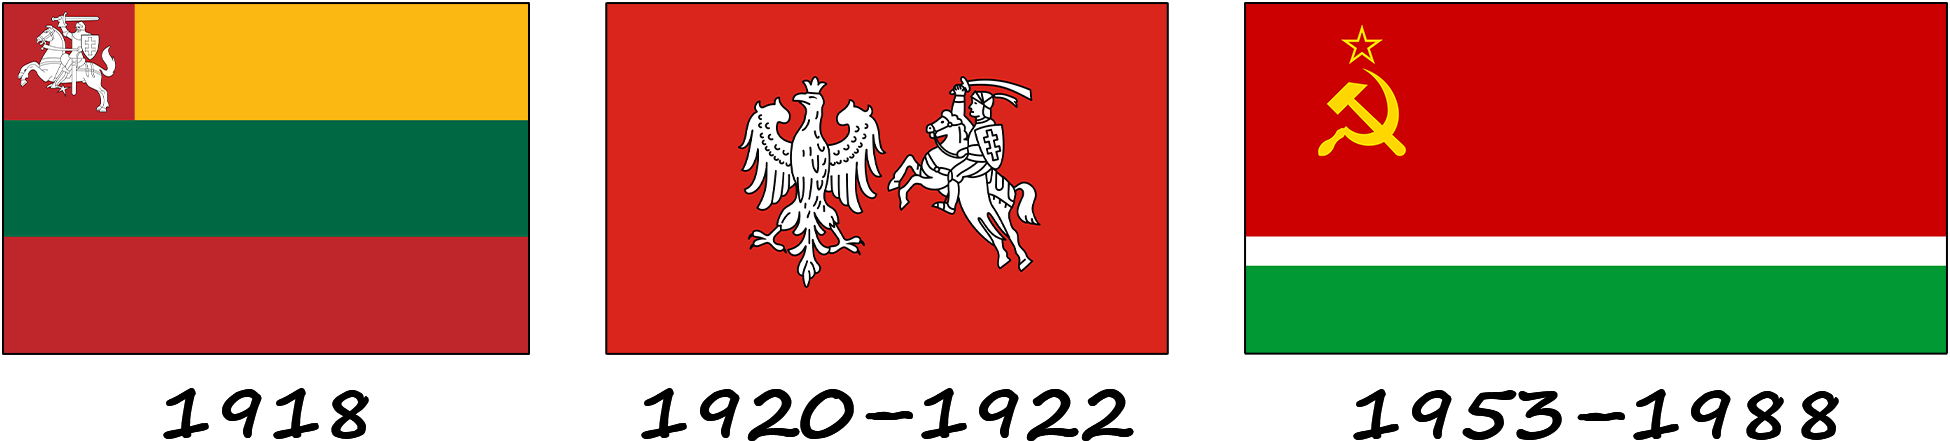 Historia de la bandera lituana